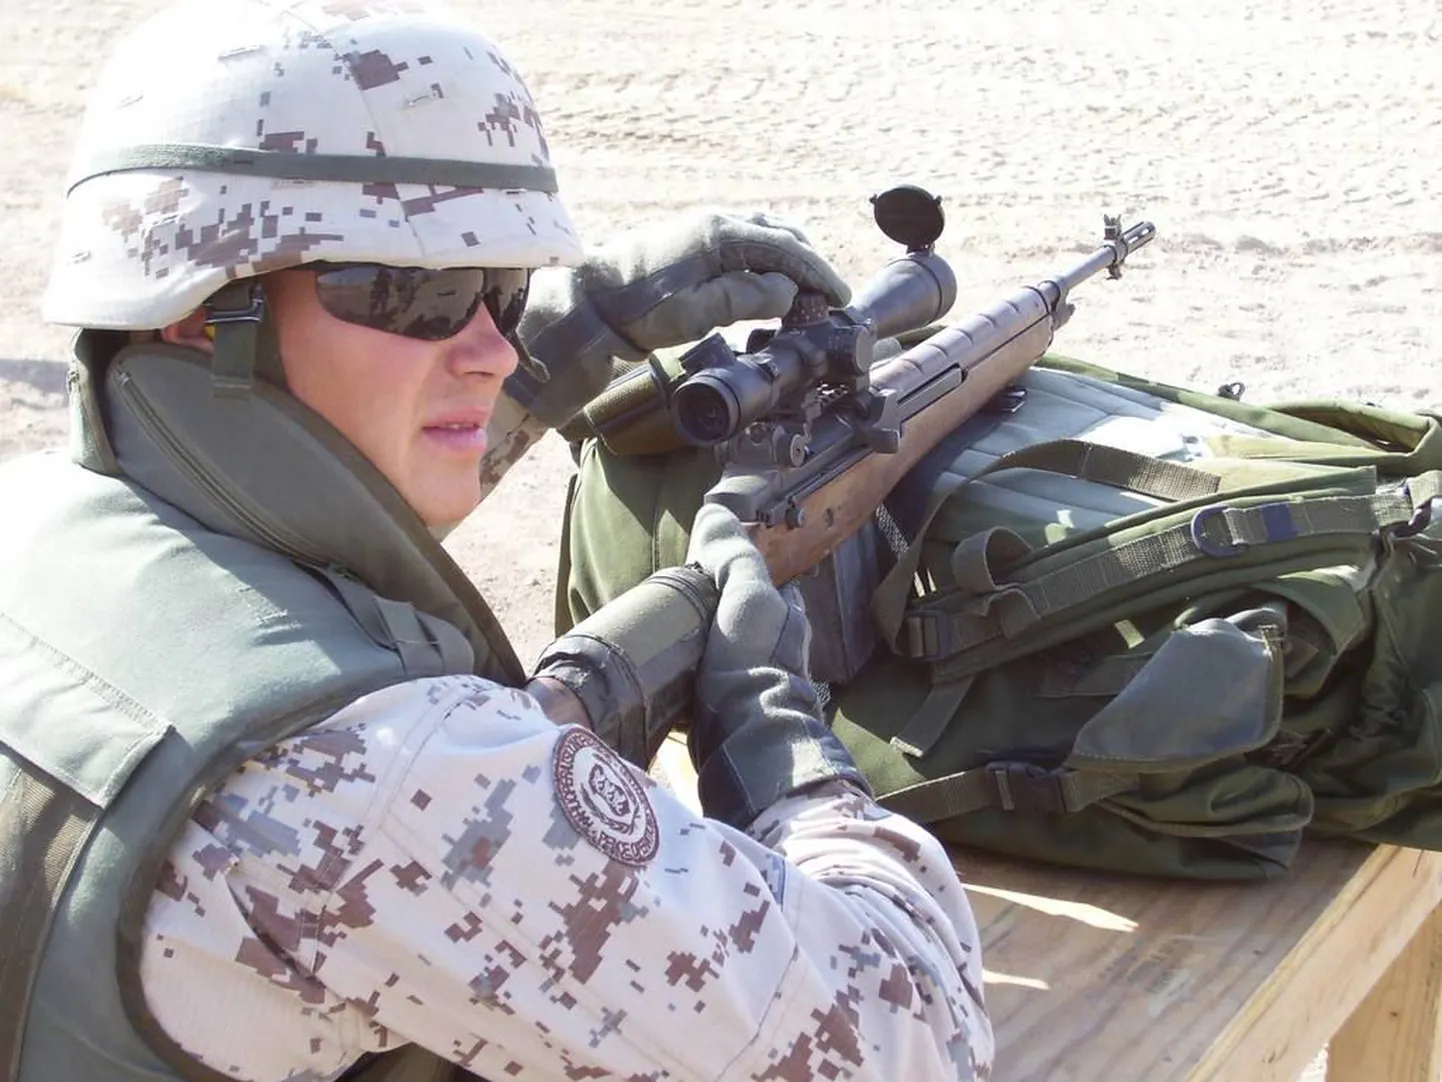 Eesti kaitseväelased on osalenud Iraagis missioonil ka arem. Jalaväekompanii Estpla-13 liige 2006. aastal Iraagis.